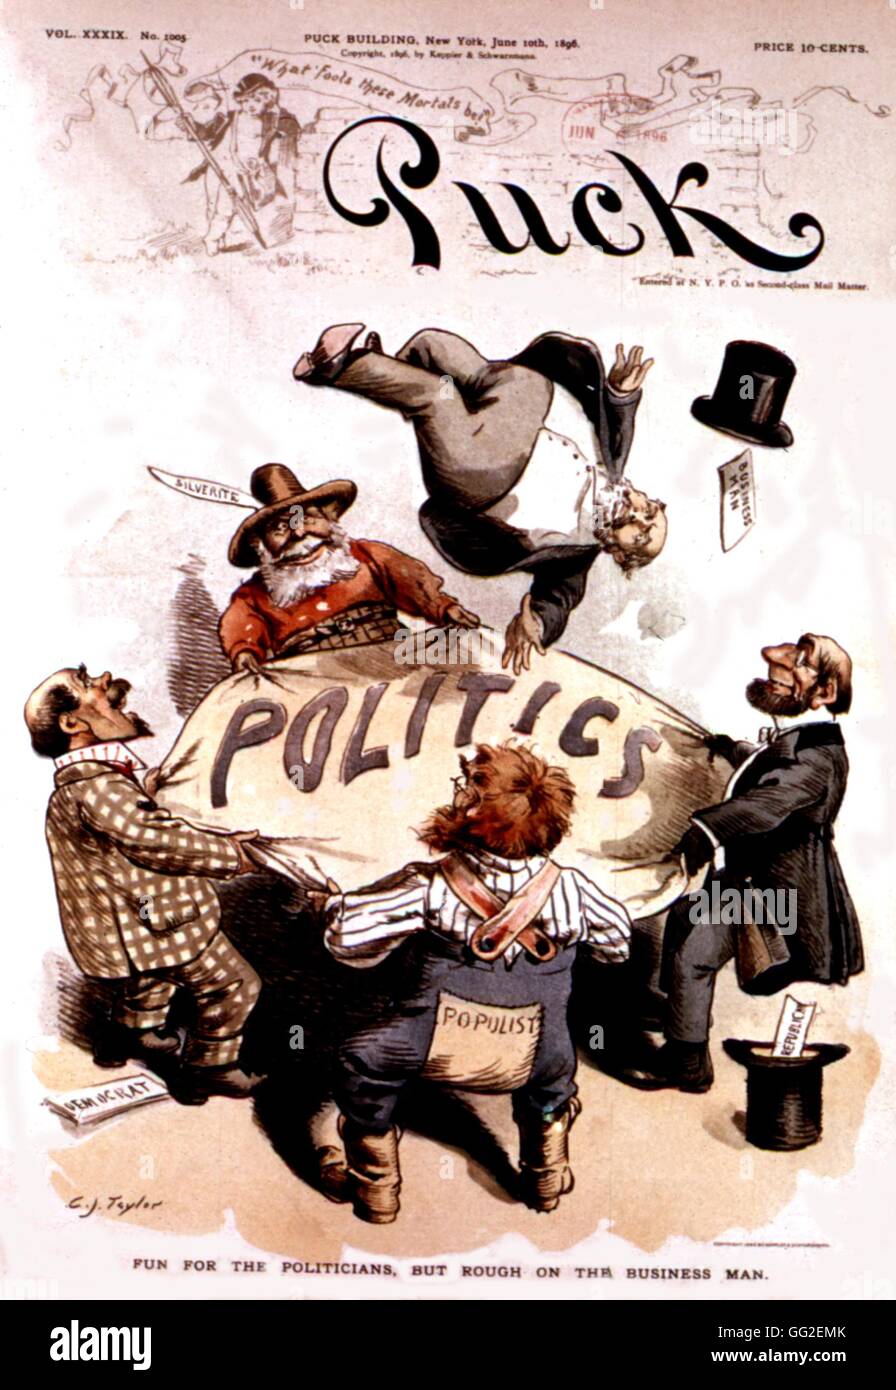 Dessin animé satirique dans 'Puck', les politiciens s'amusent mais les hommes d'affaires sont un moment difficile 1896 United States Washington. Bibliothèque du Congrès Banque D'Images